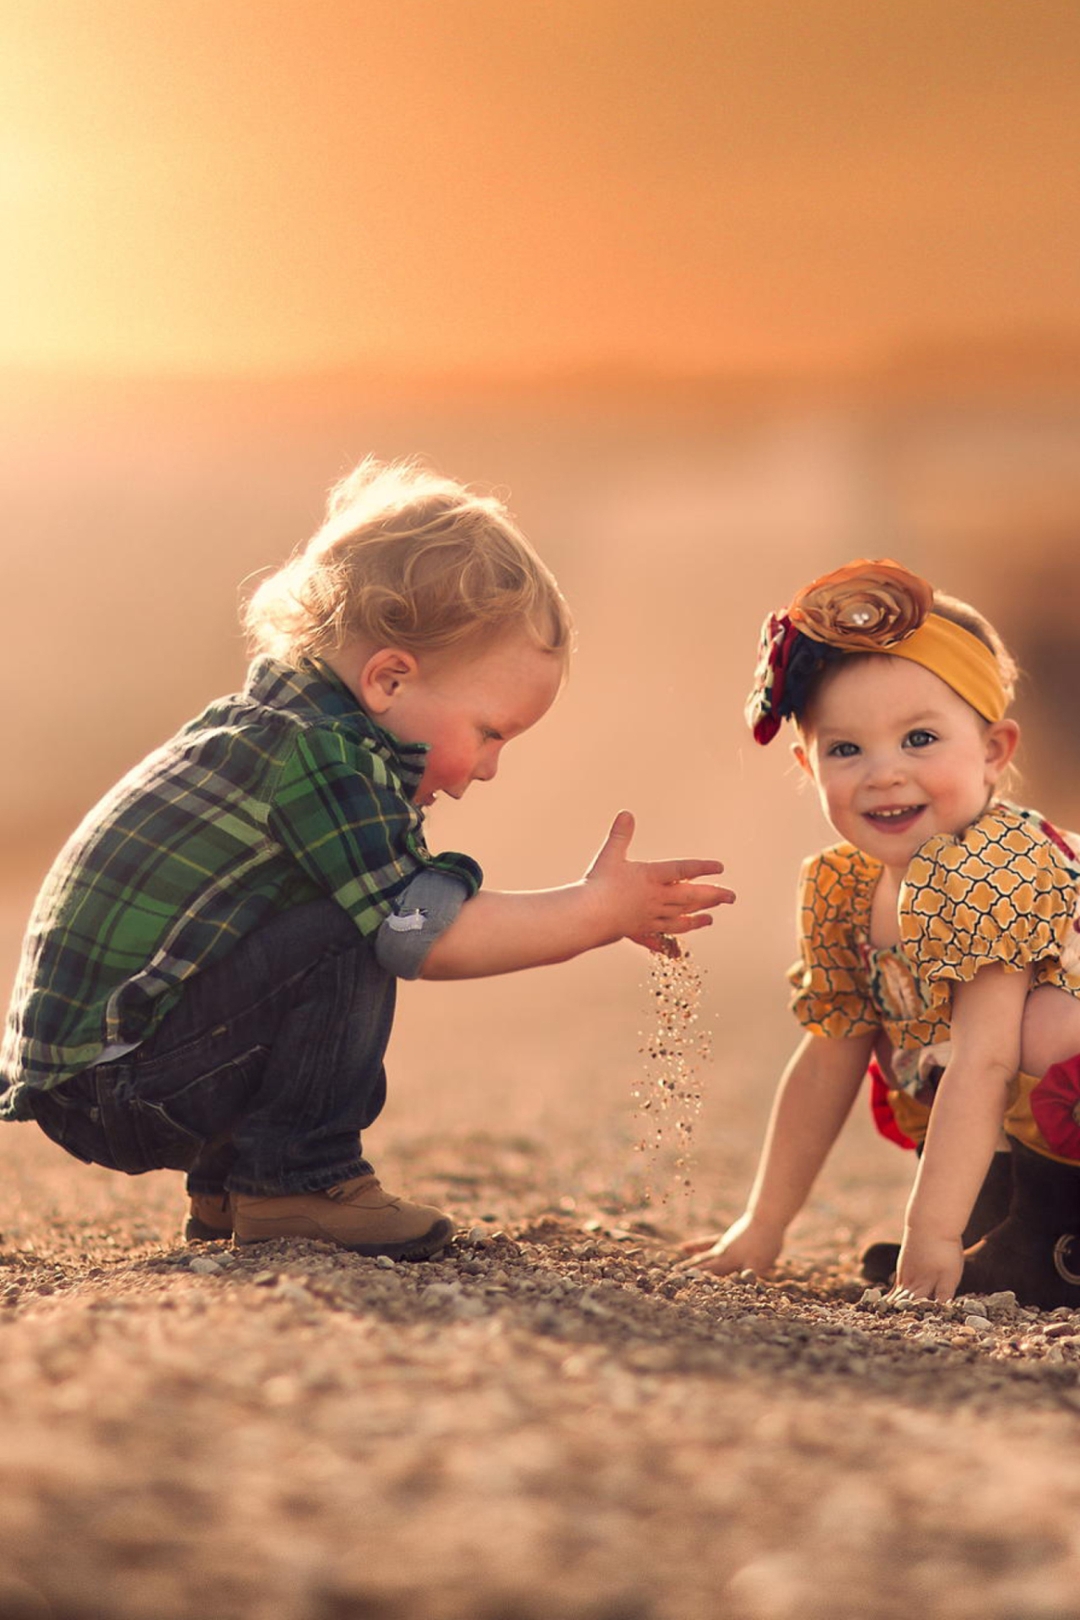 Картинка: Ребятишки, мальчик, девочка, улыбка, песок, закат